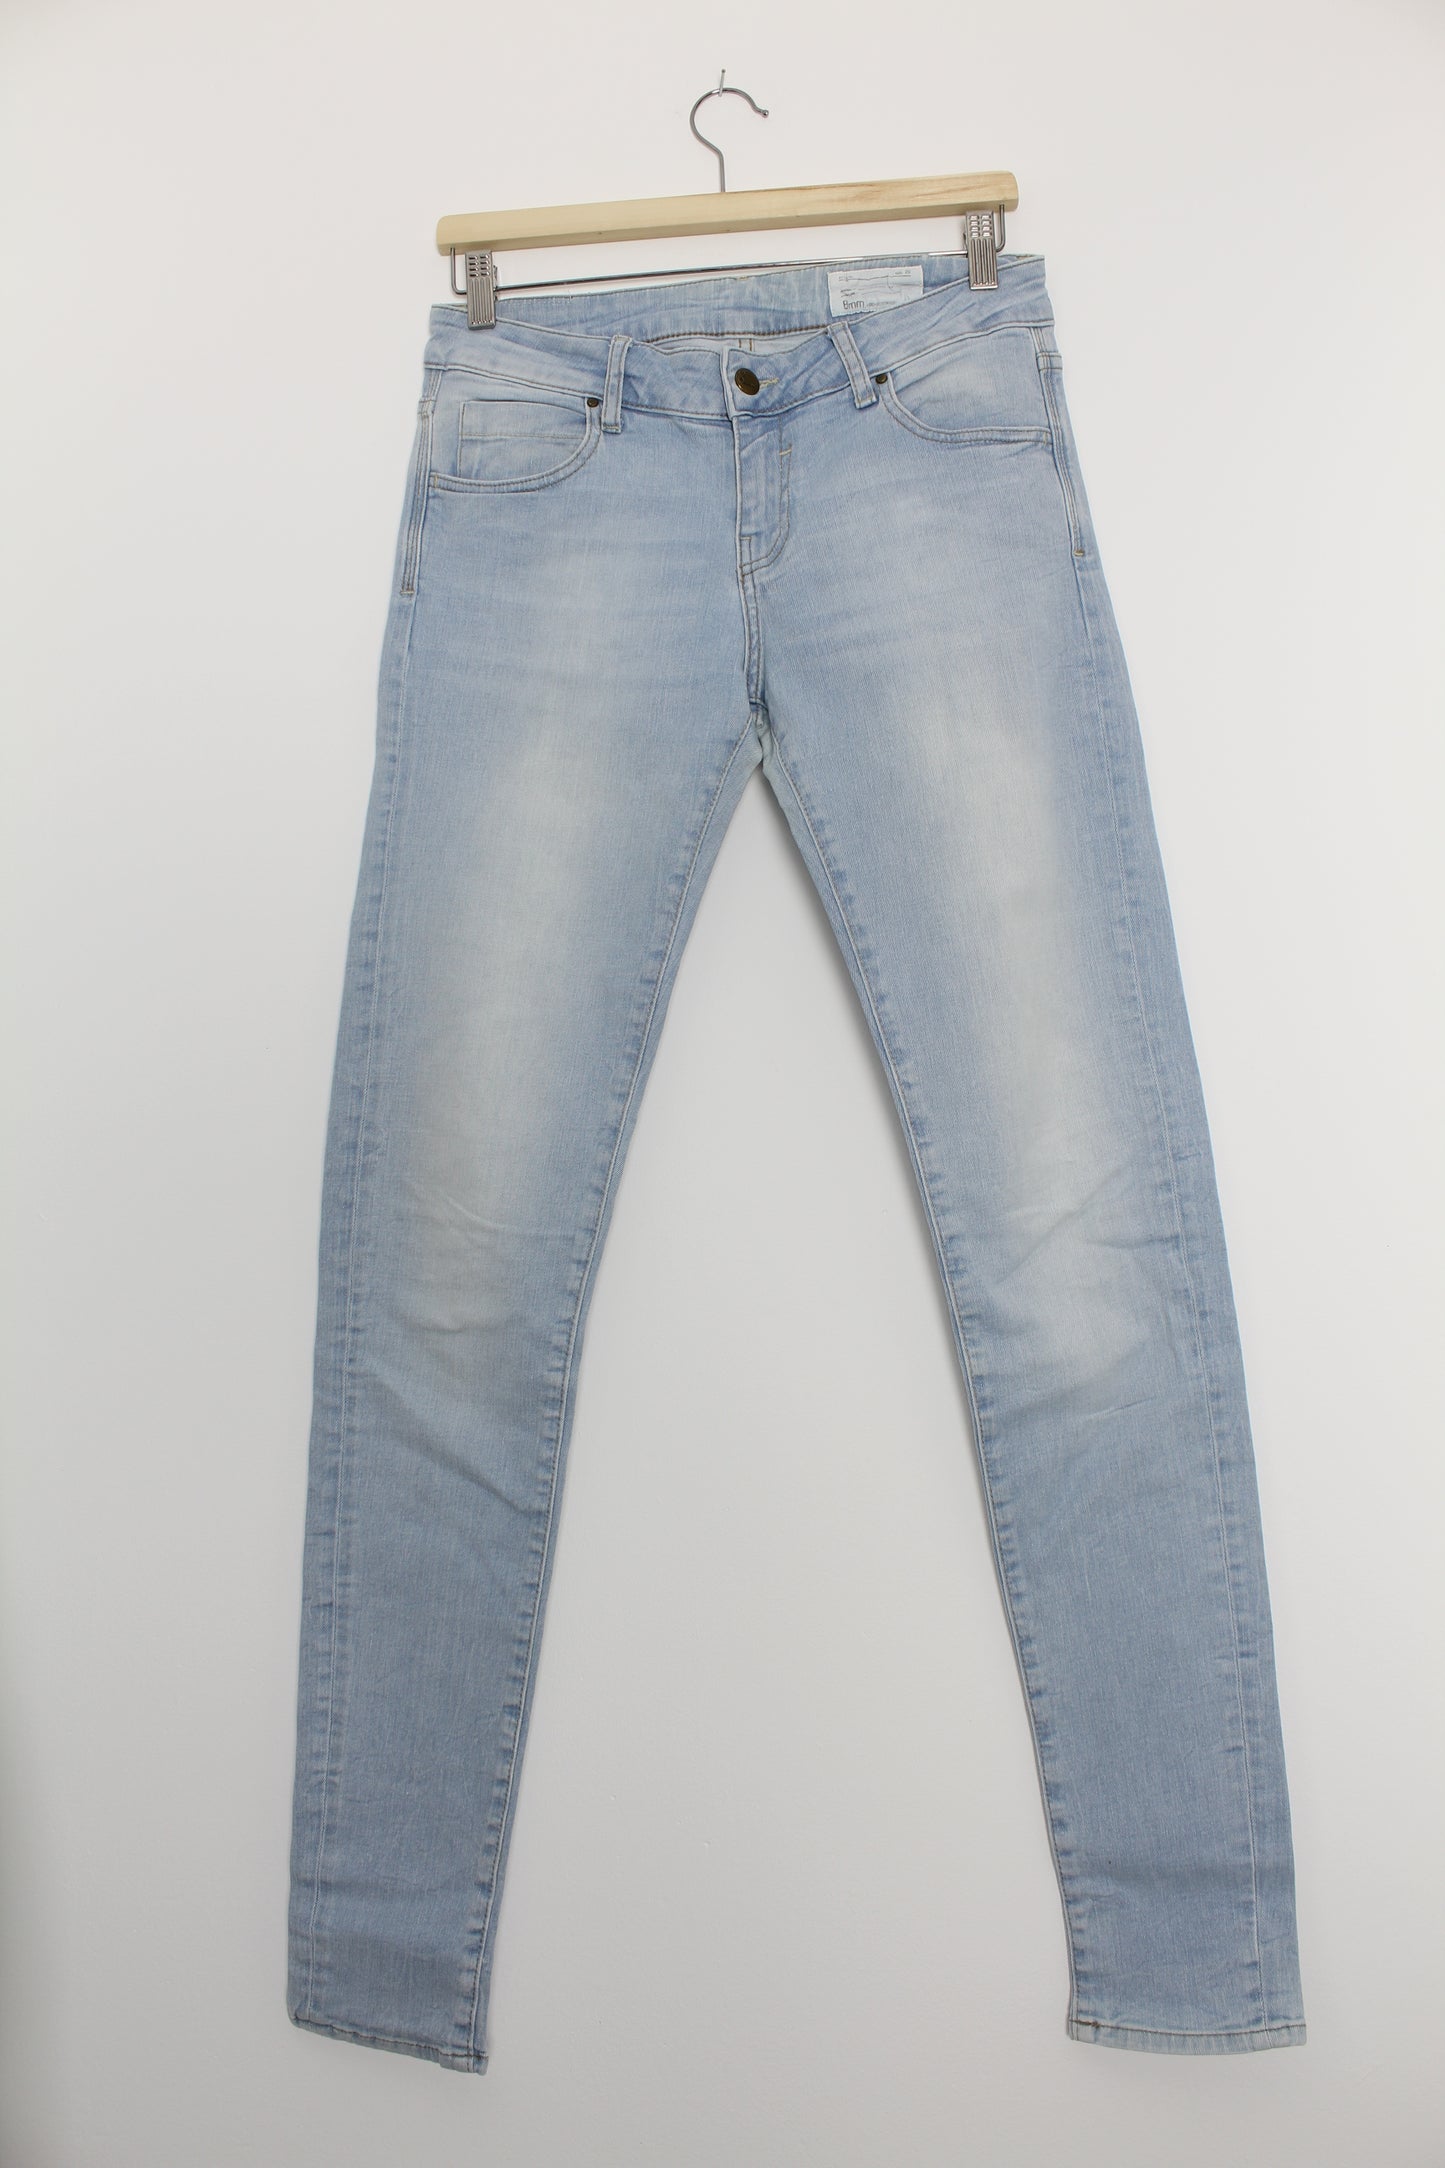 8mm denim jeans MANI lichtblauw maat 29